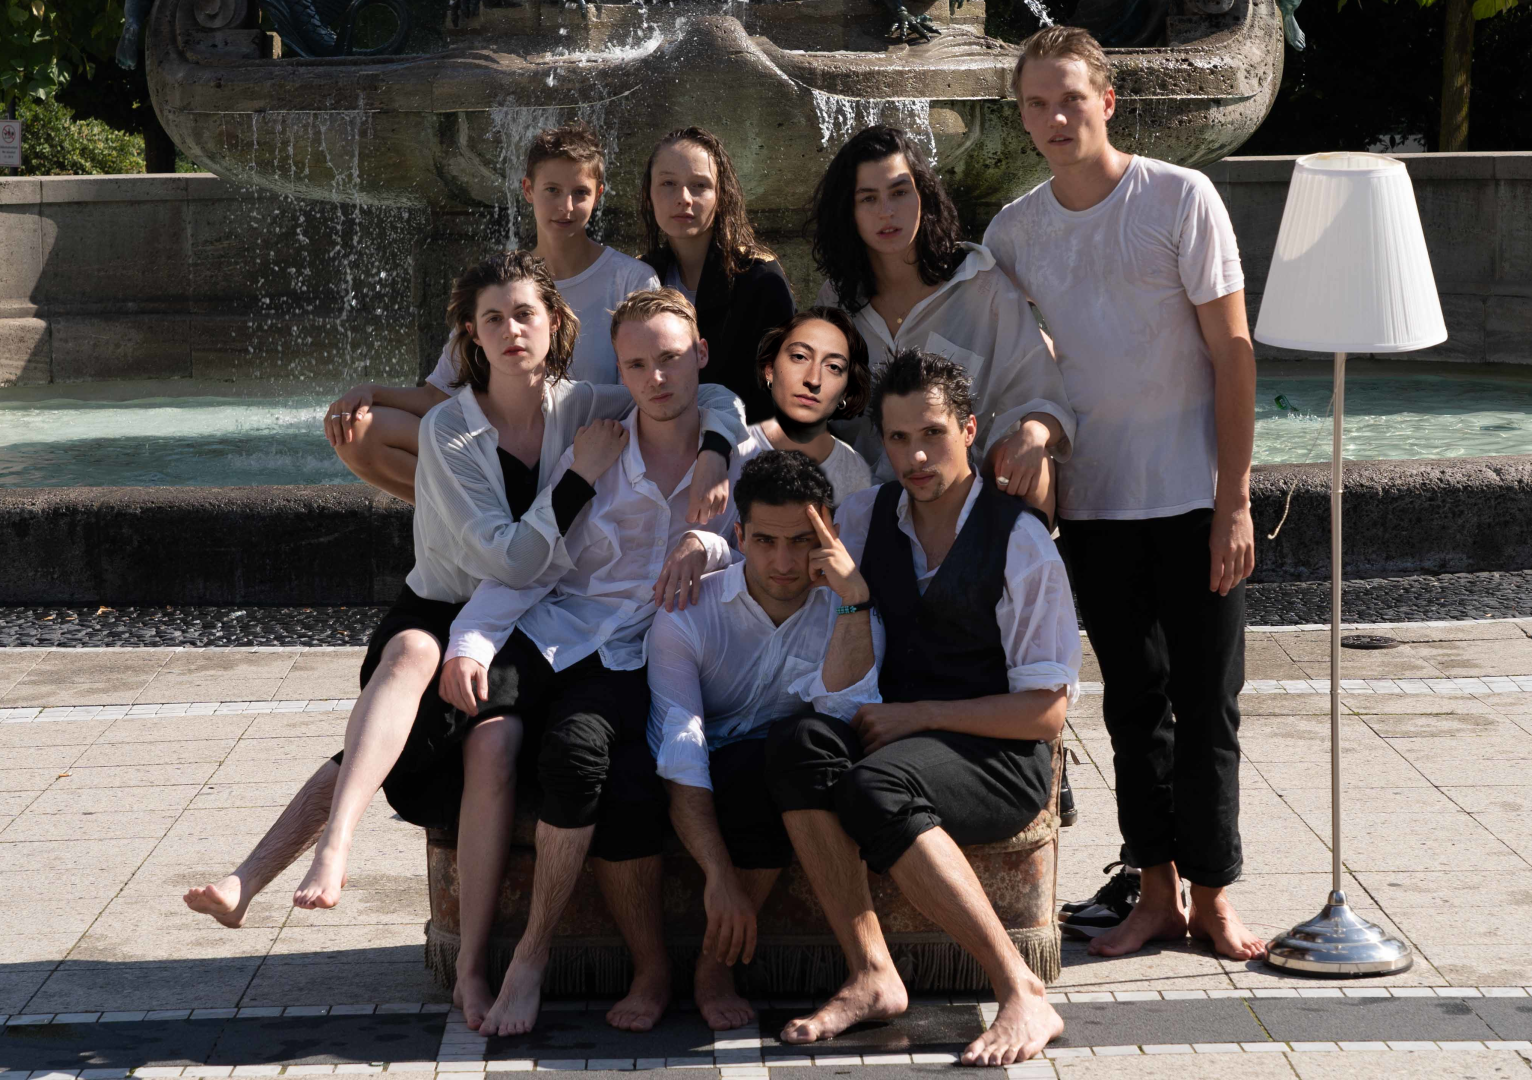 Gruppenfoto mit neun Absolvierenden vor einem Brunne, alle sind nass.